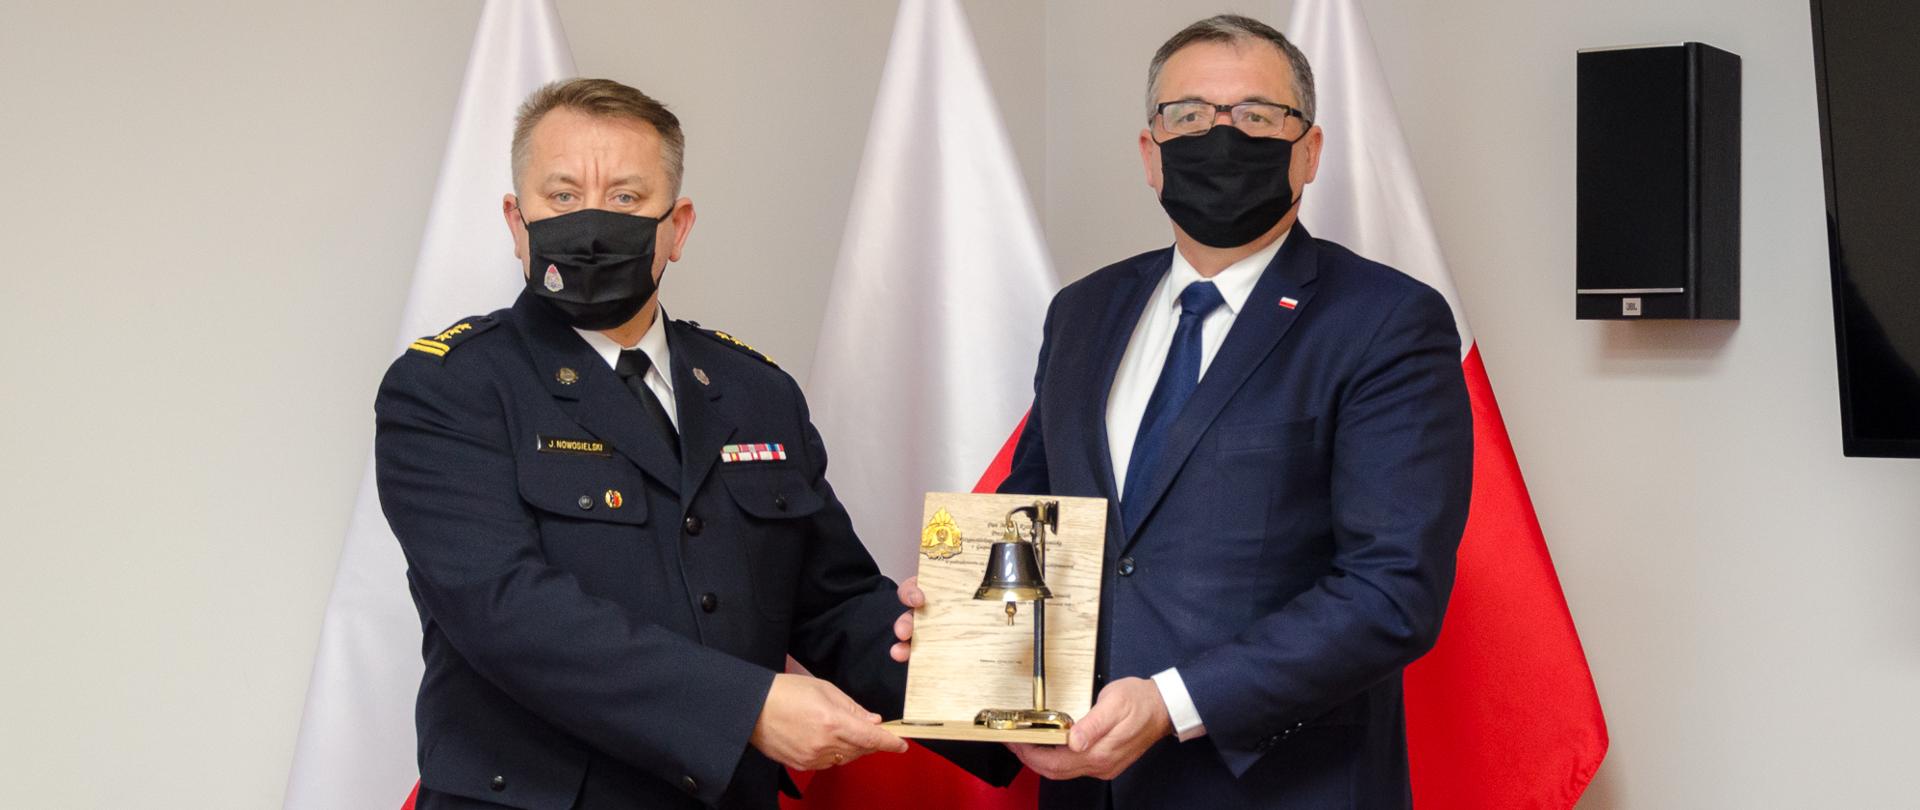 Zdjęcie przedstawia dwie osoby, strażaka i osobę w ubraniu cywilnym które stoją na tle trzech flag Polski. W dłoniach trzymają okolicznościową statuetkę w kształcie toporka z dzwonkiem.
